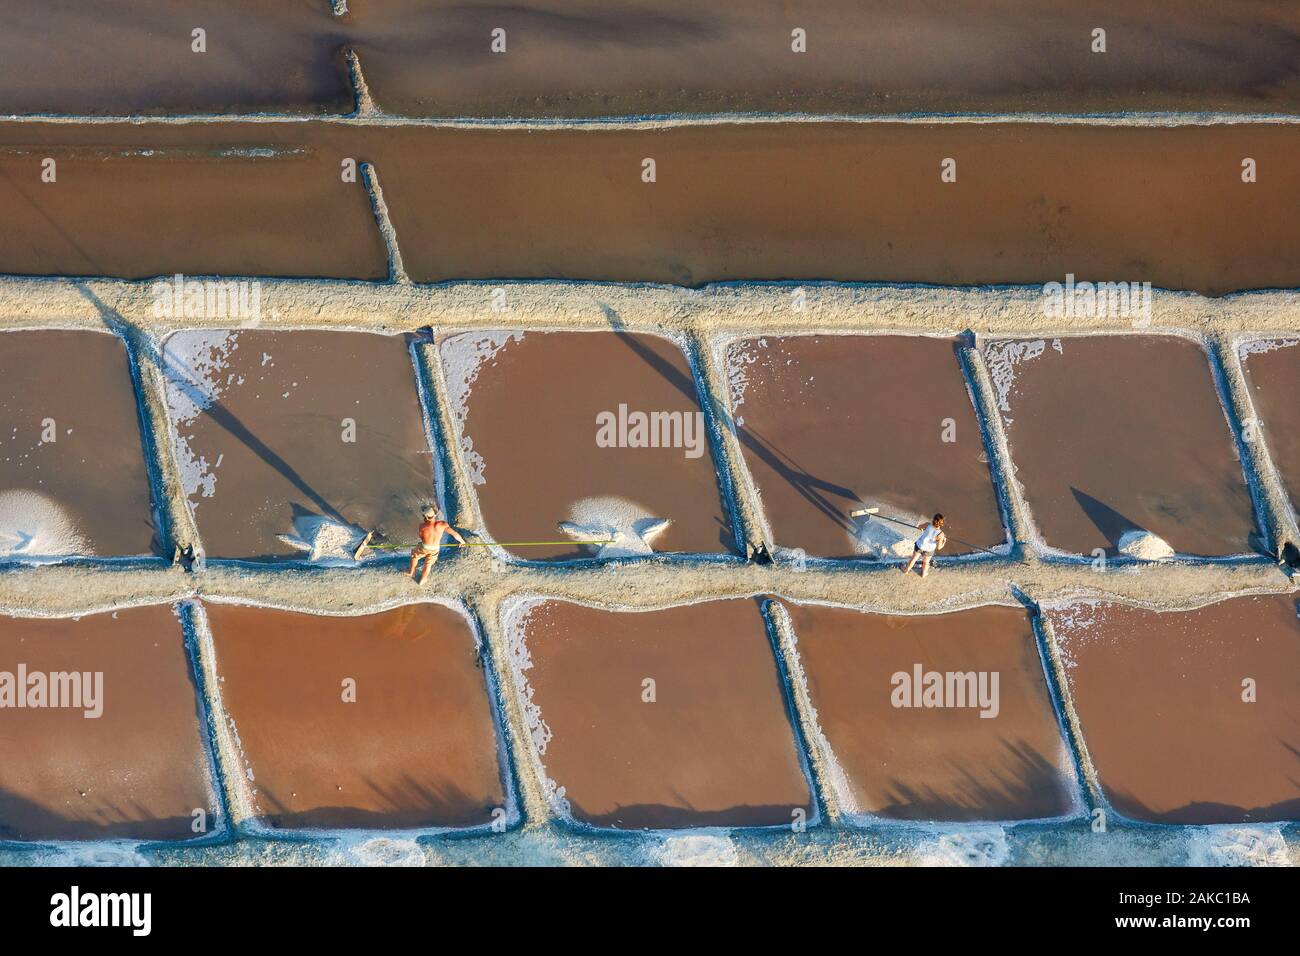 France, Charente Maritime, Ile de Ré, Ars en Ré, travailleur du sel dans les marais salants (vue aérienne) Banque D'Images